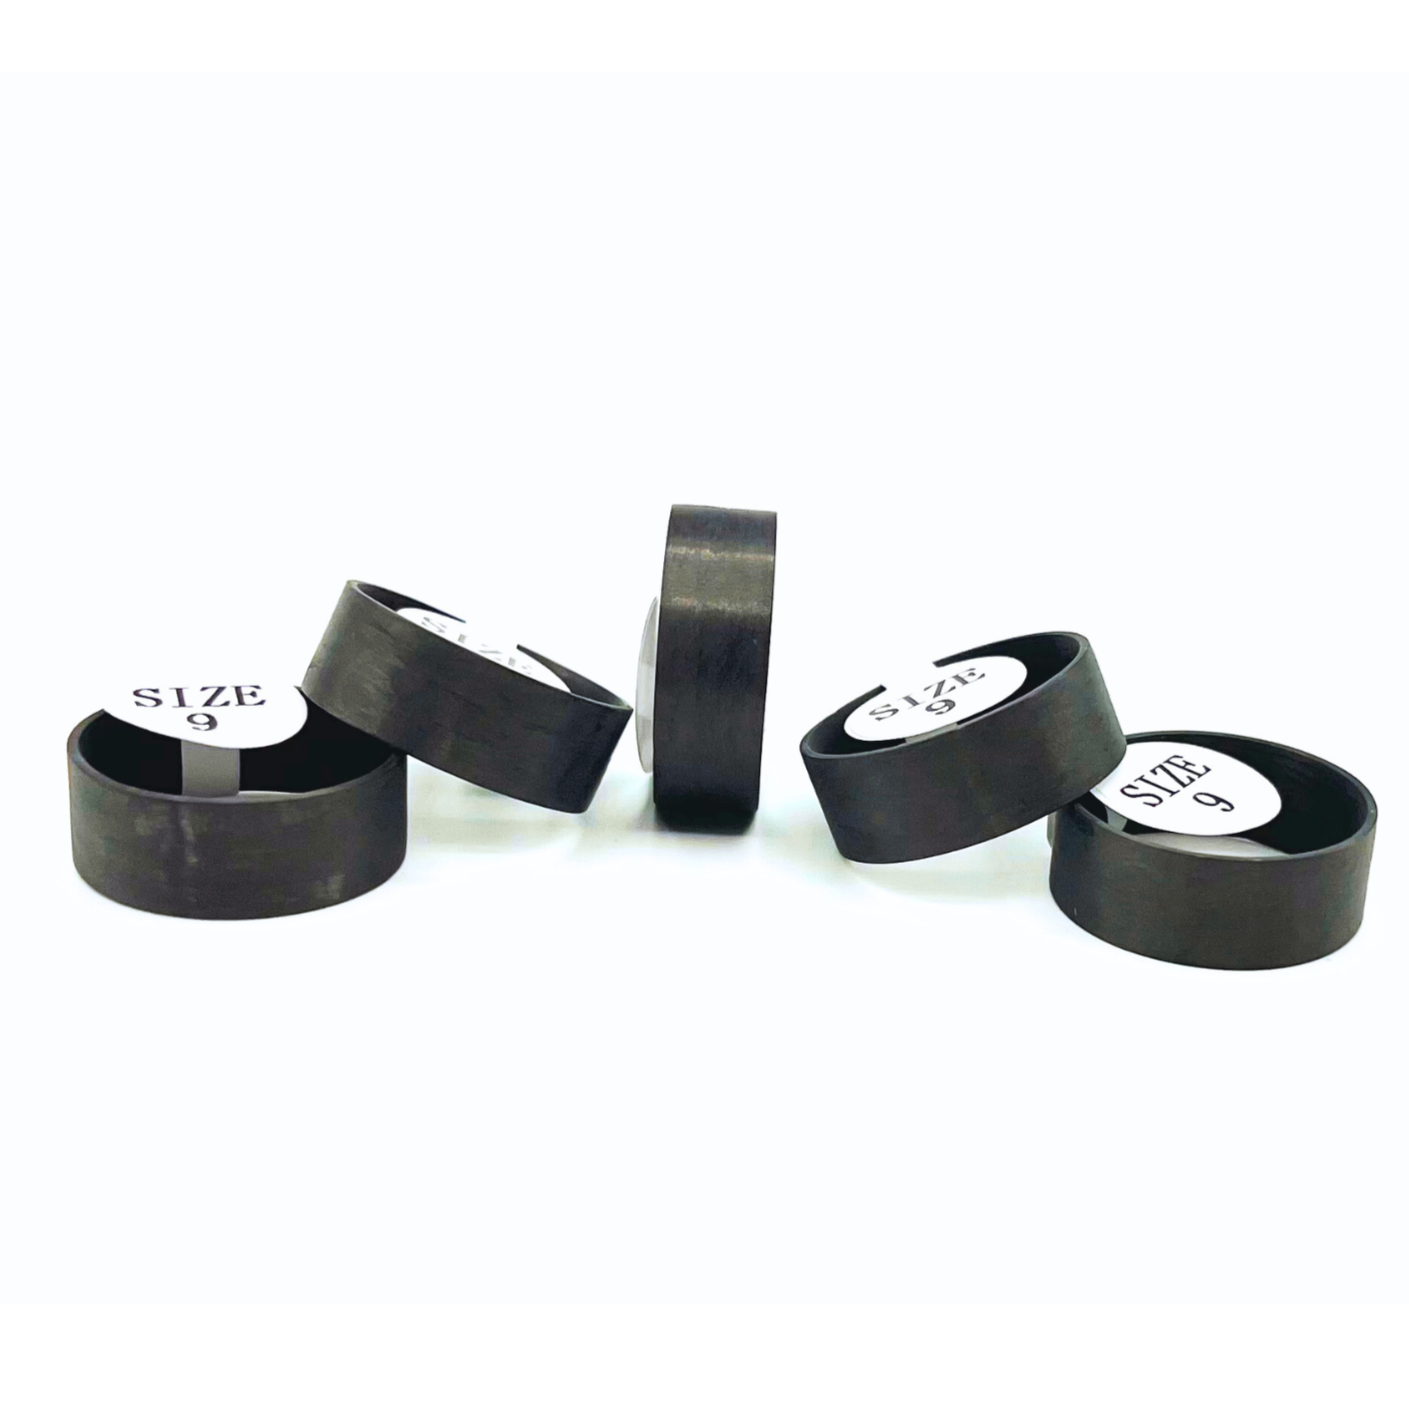 5 Pack Carbon Fiber Ring Liners - Patrick Adair Supplies